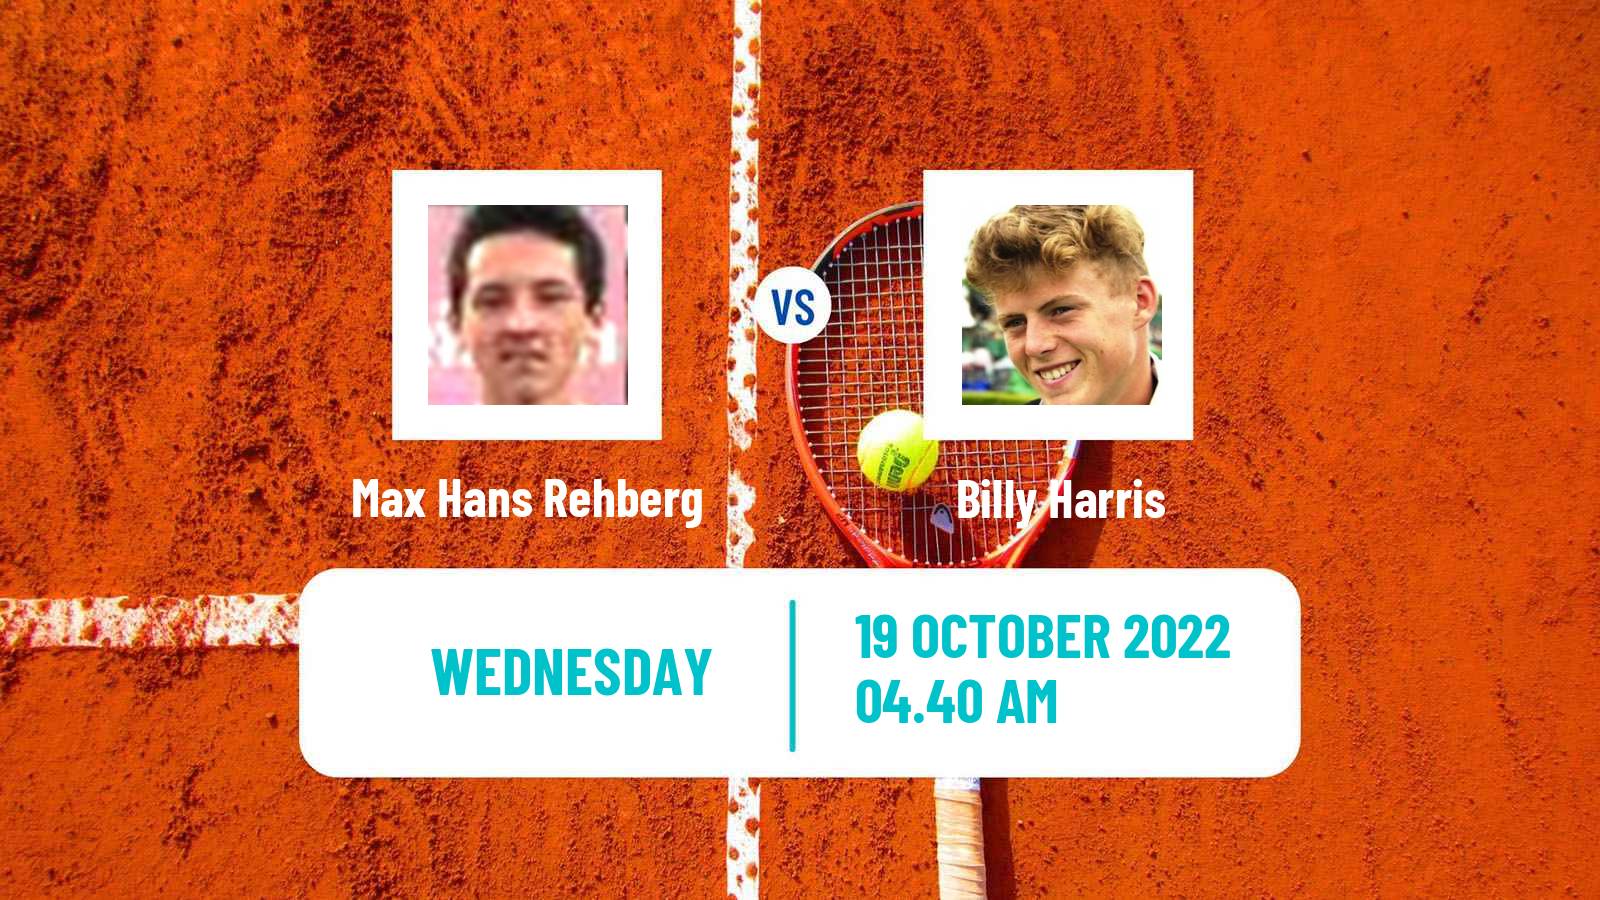 Tennis ATP Challenger Max Hans Rehberg - Billy Harris